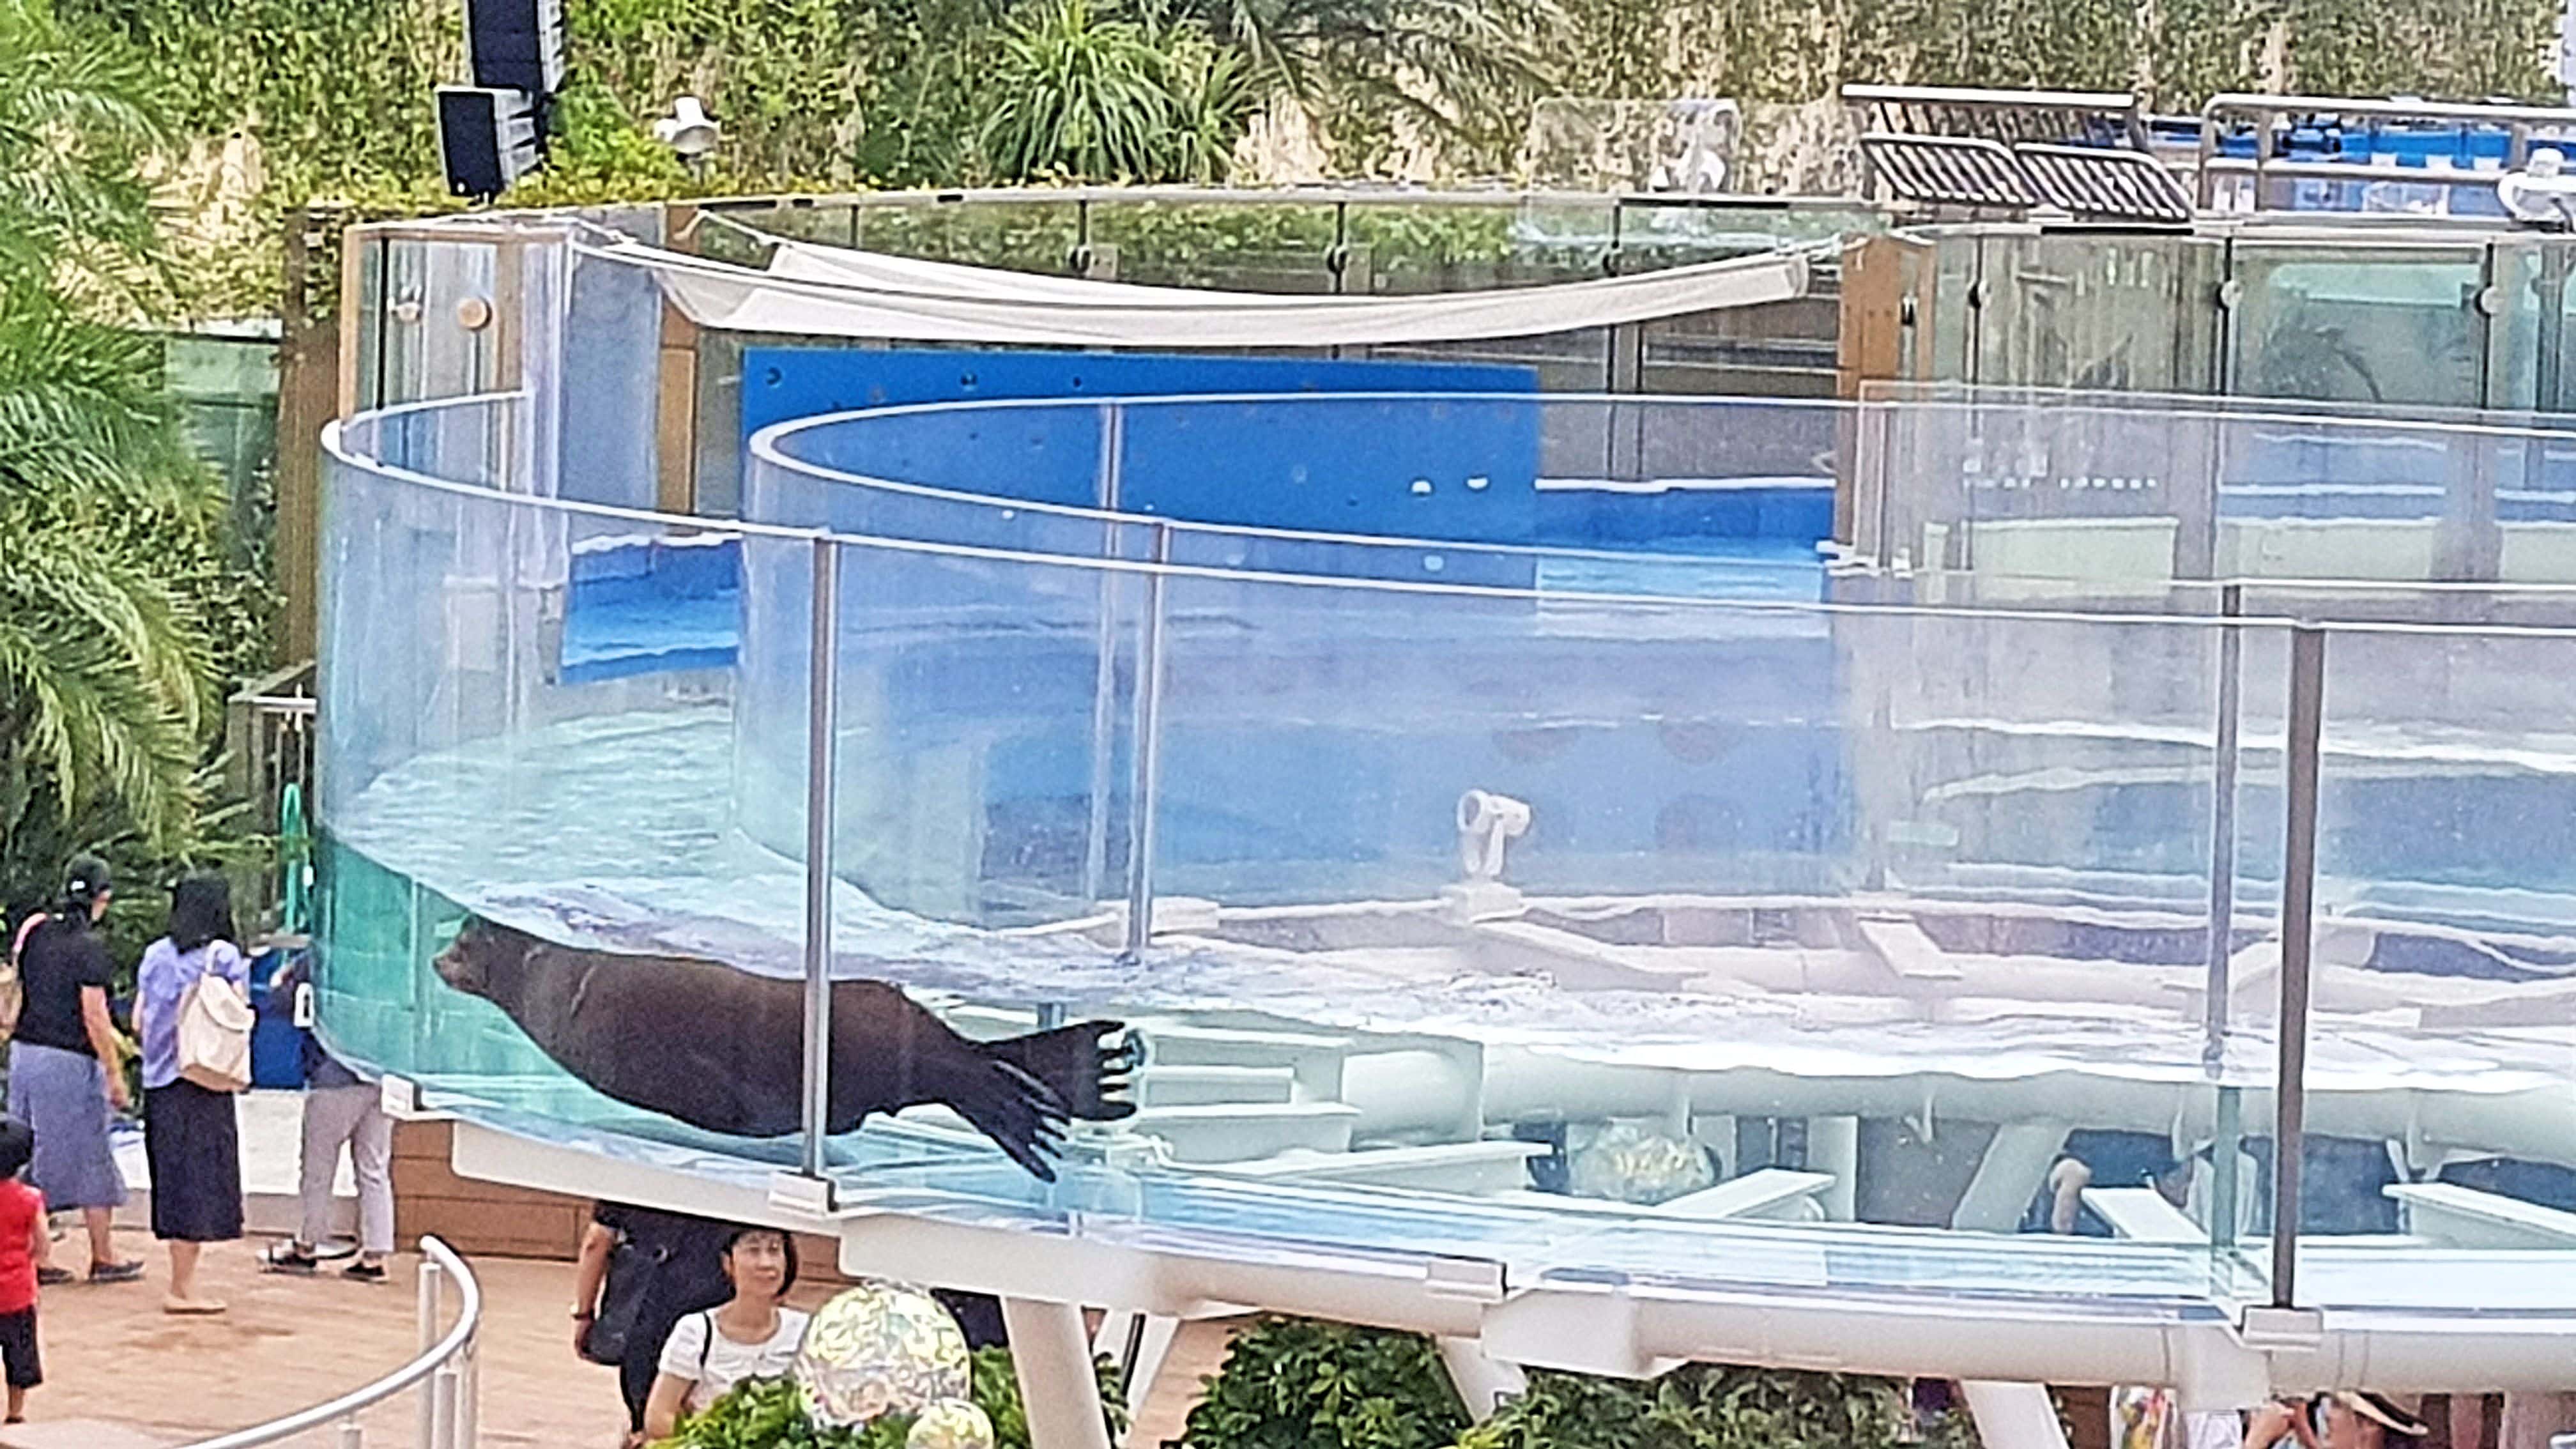 รีวิวพิพิธภัณฑ์สัตว์น้ำซันไชน์(Sunshine Aquarium) 